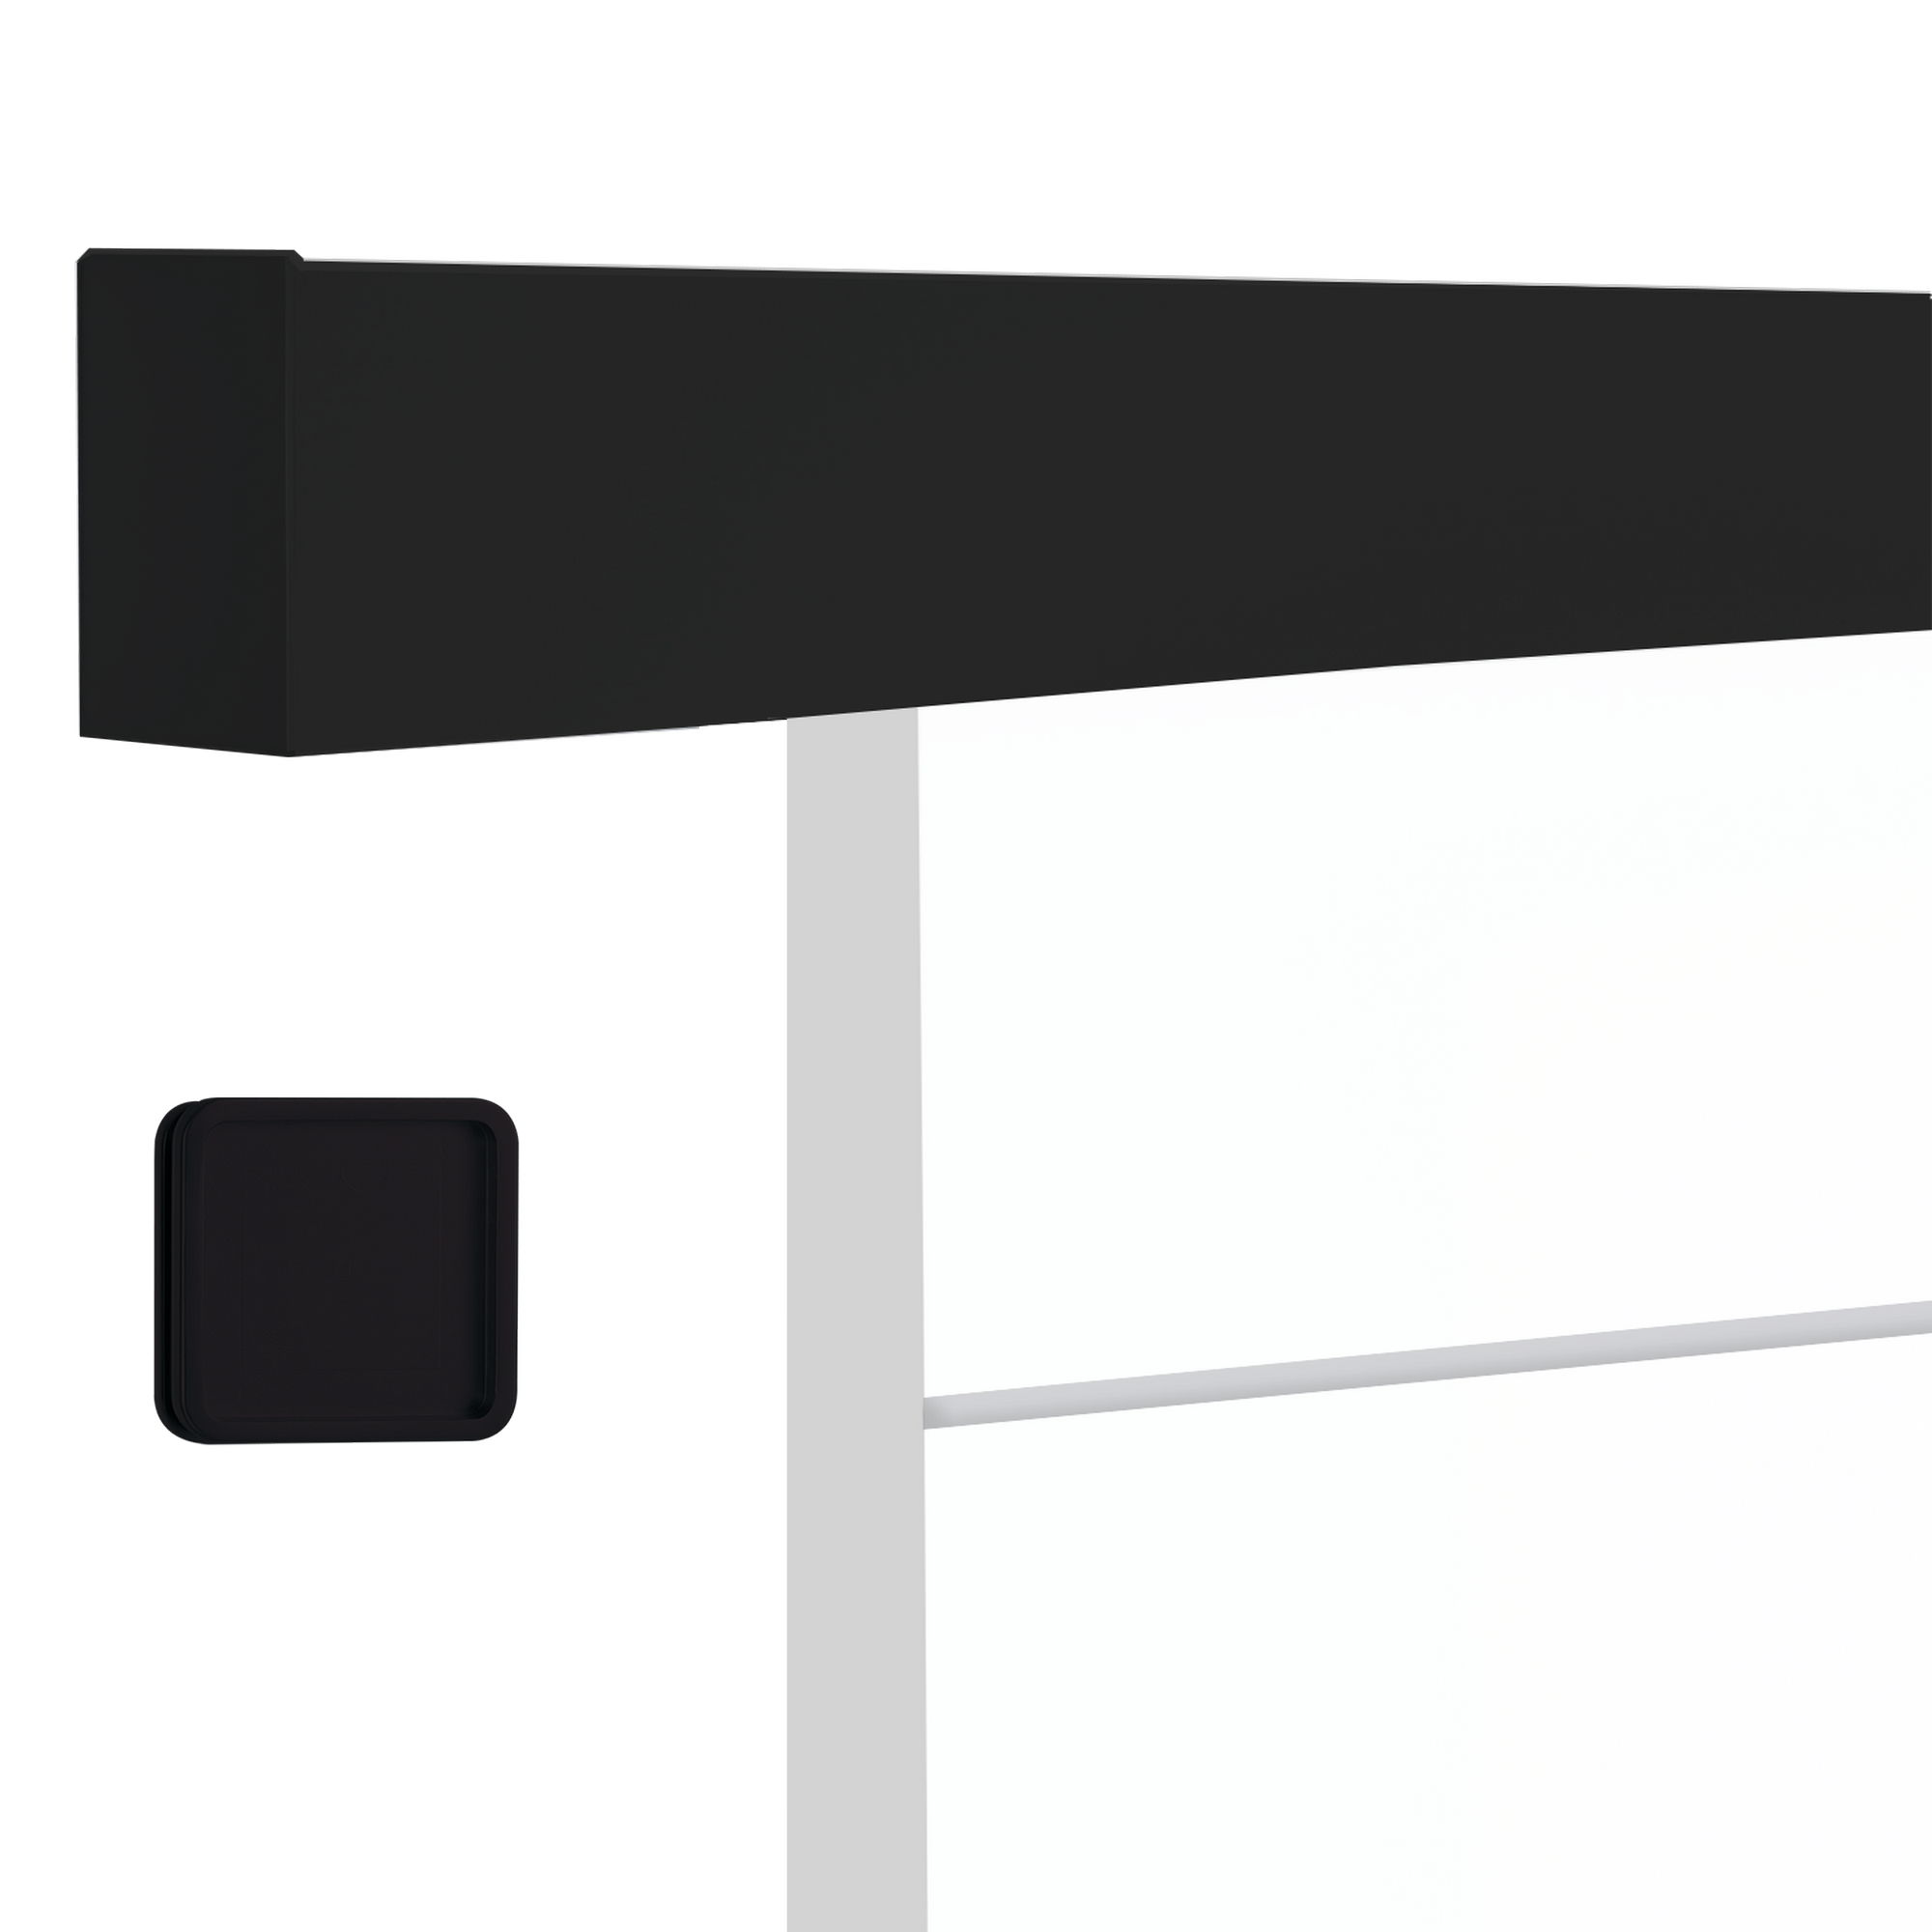 Schiebetür 'Ontario' schwarz weiß 93,5 x 205,8 cm + product picture